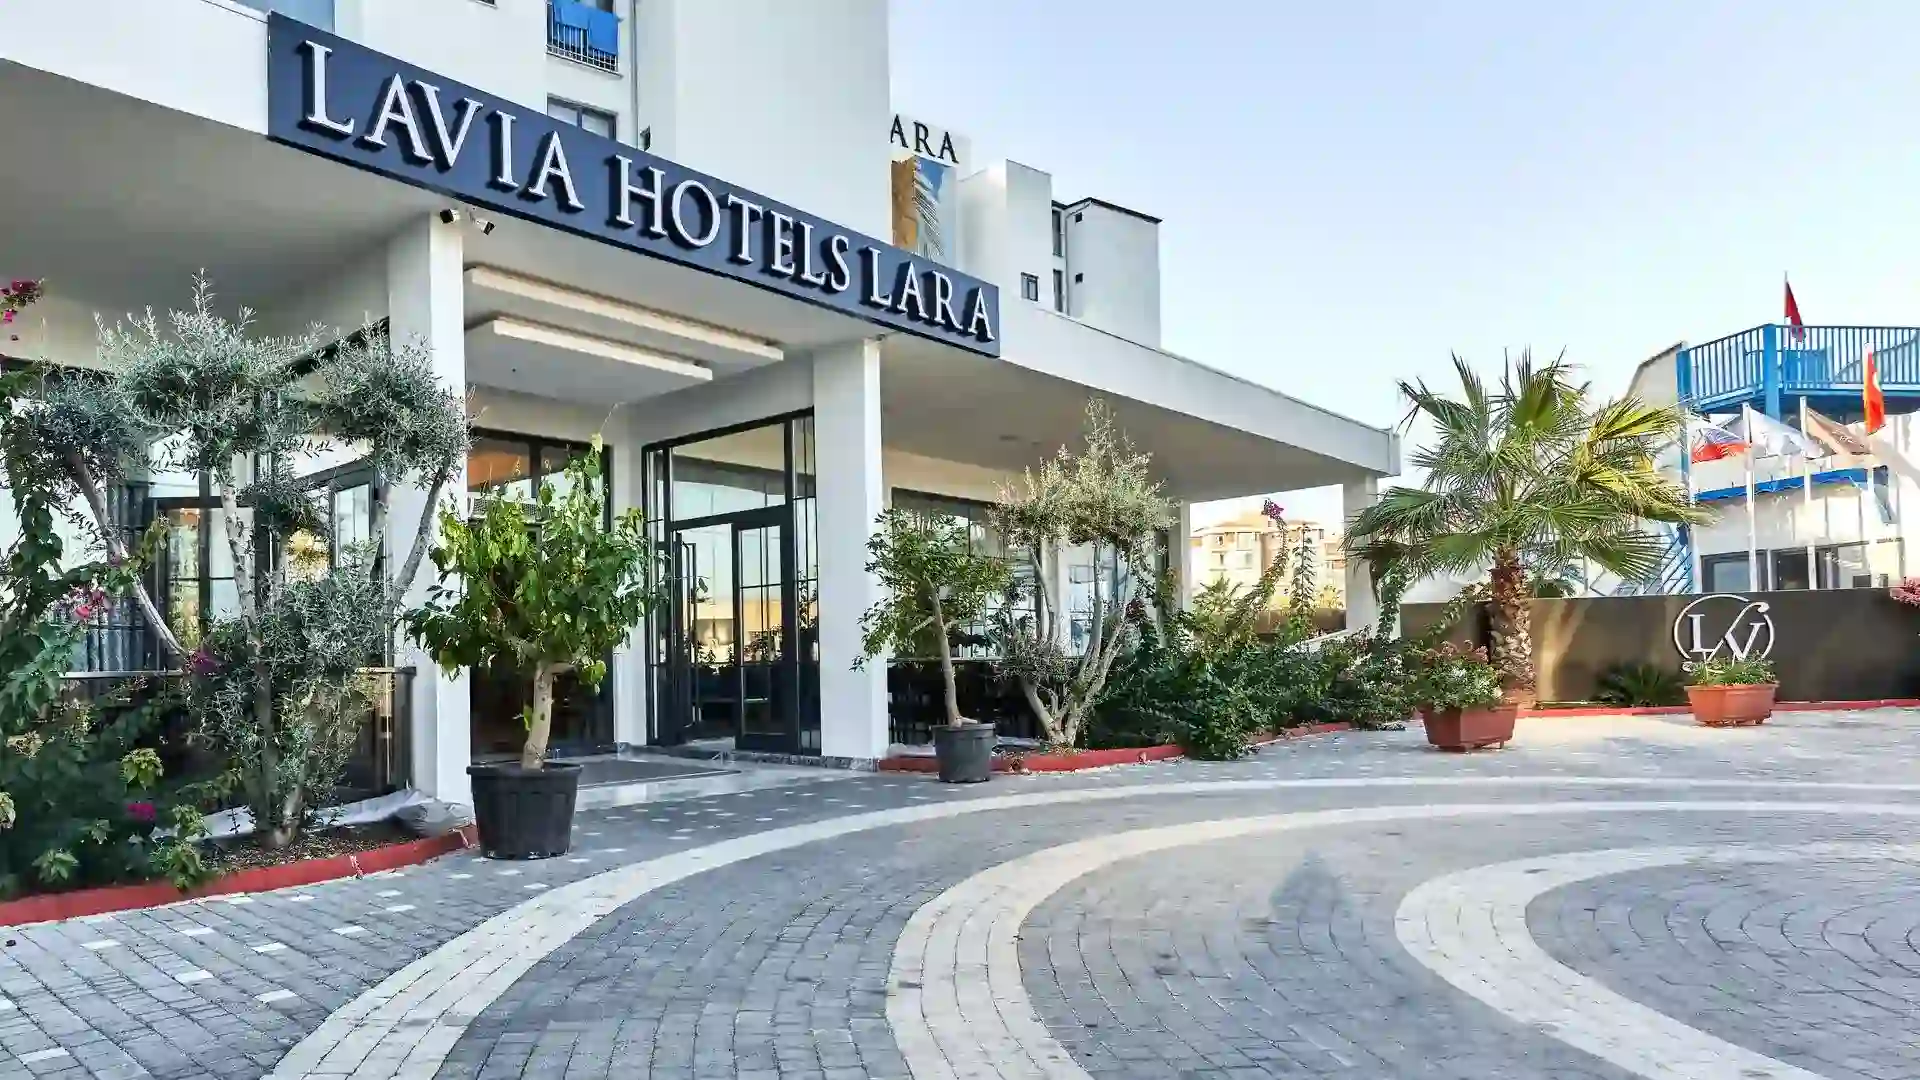 LAVIA HOTELS LARA | Facility